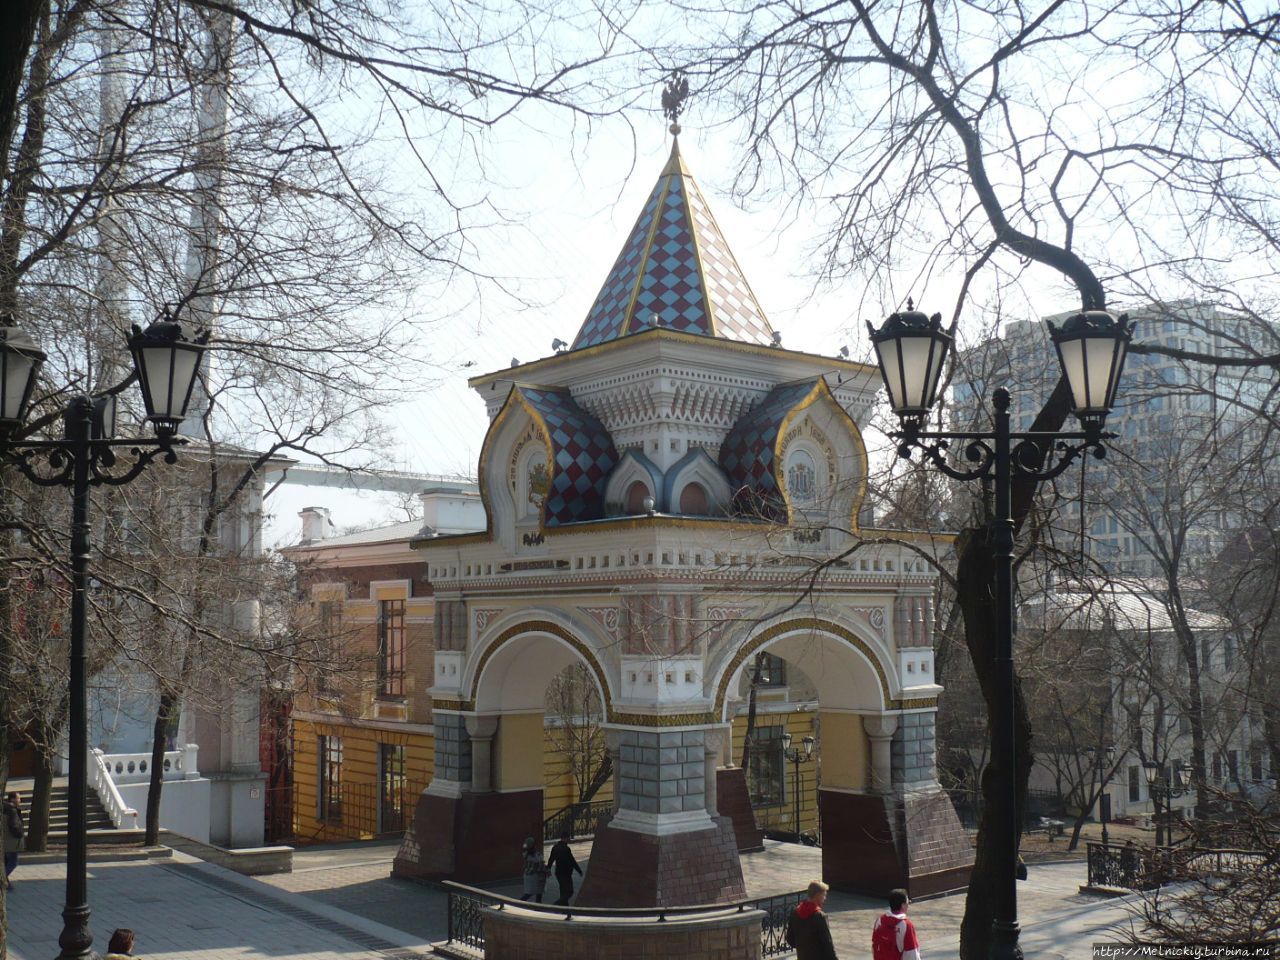 Николаевские триумфальные ворота / Nikolaev Triumphal Gate